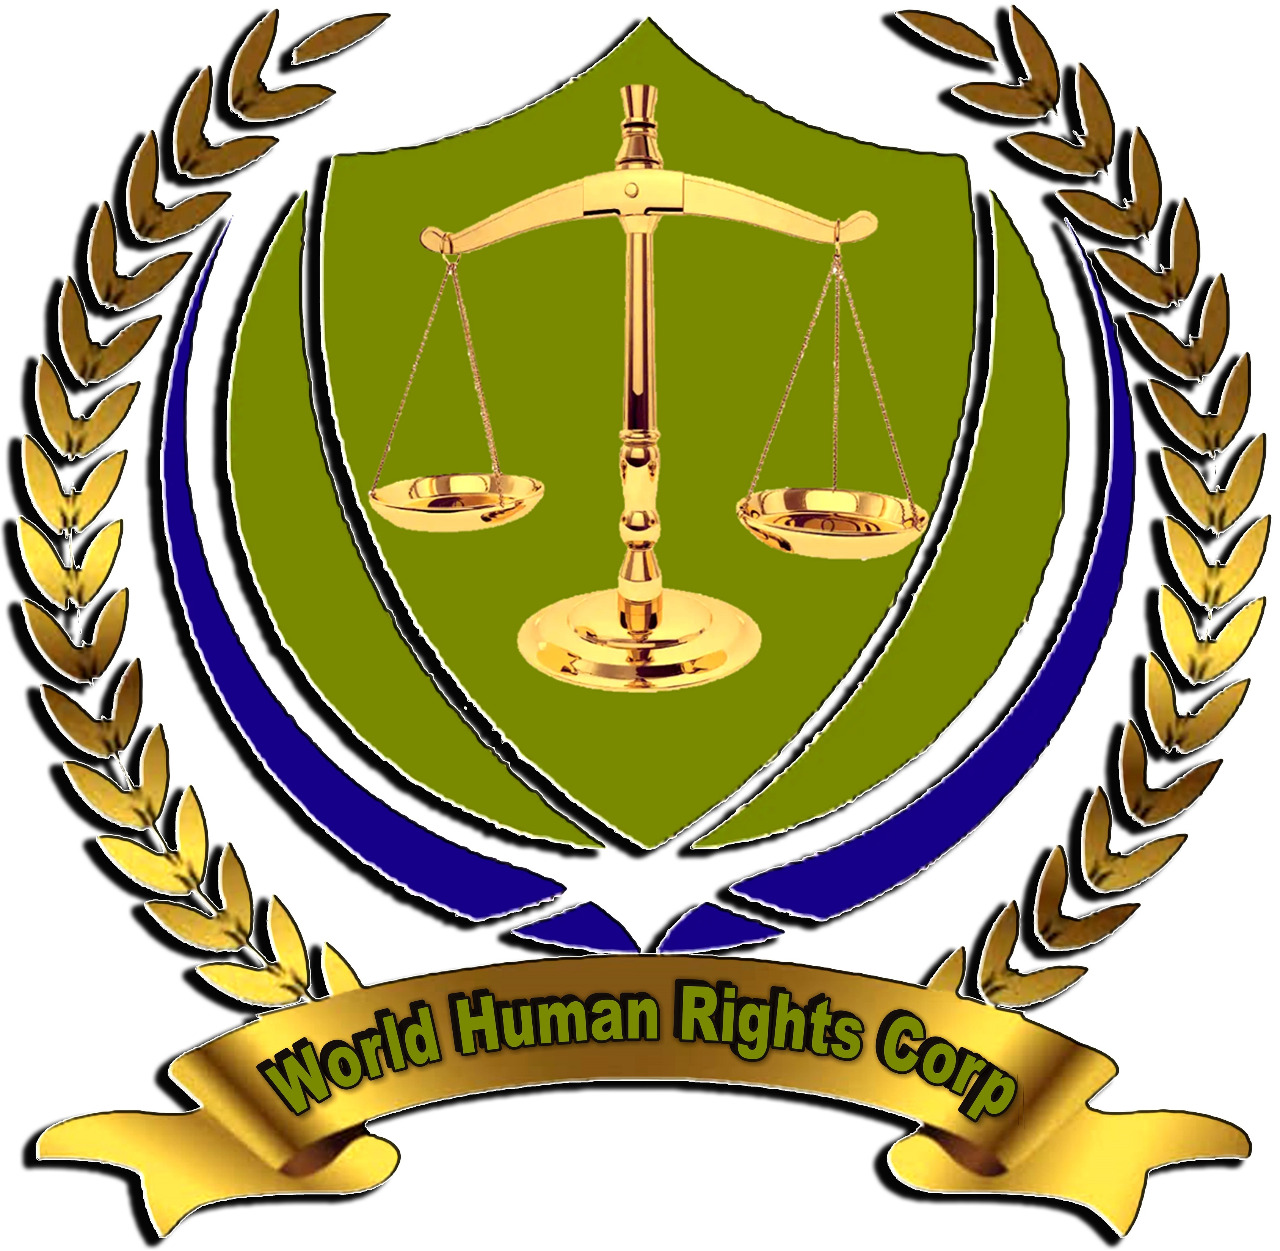 World Human Rights Corp : World Human Rights Corp Nigeria